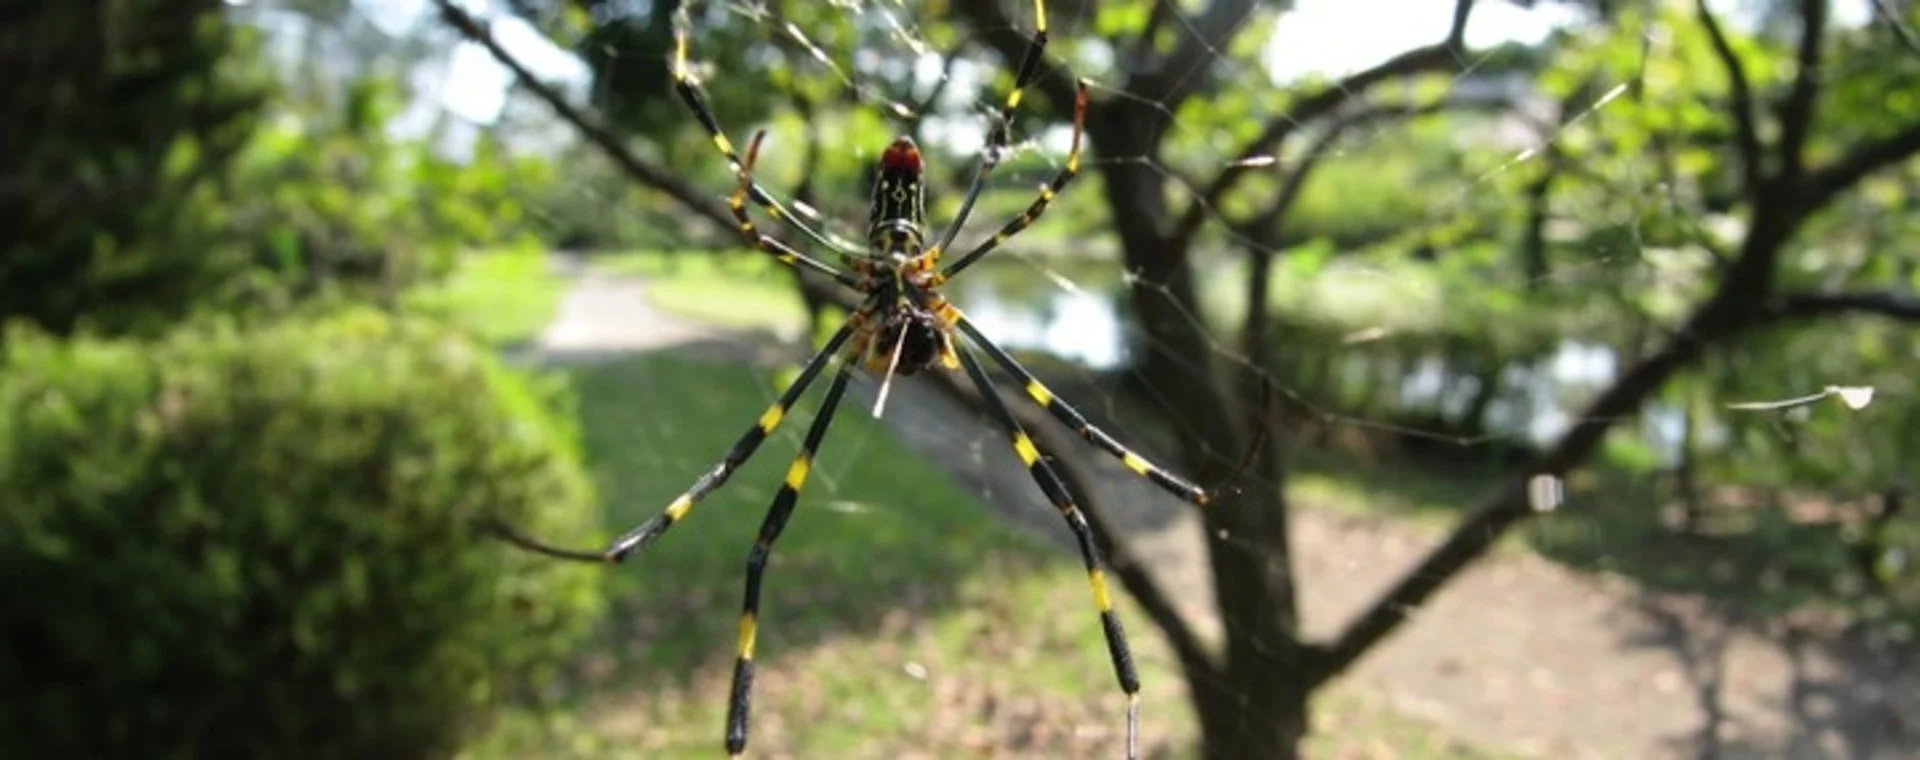 Une araignée géante et venimeuse aux portes du Québec